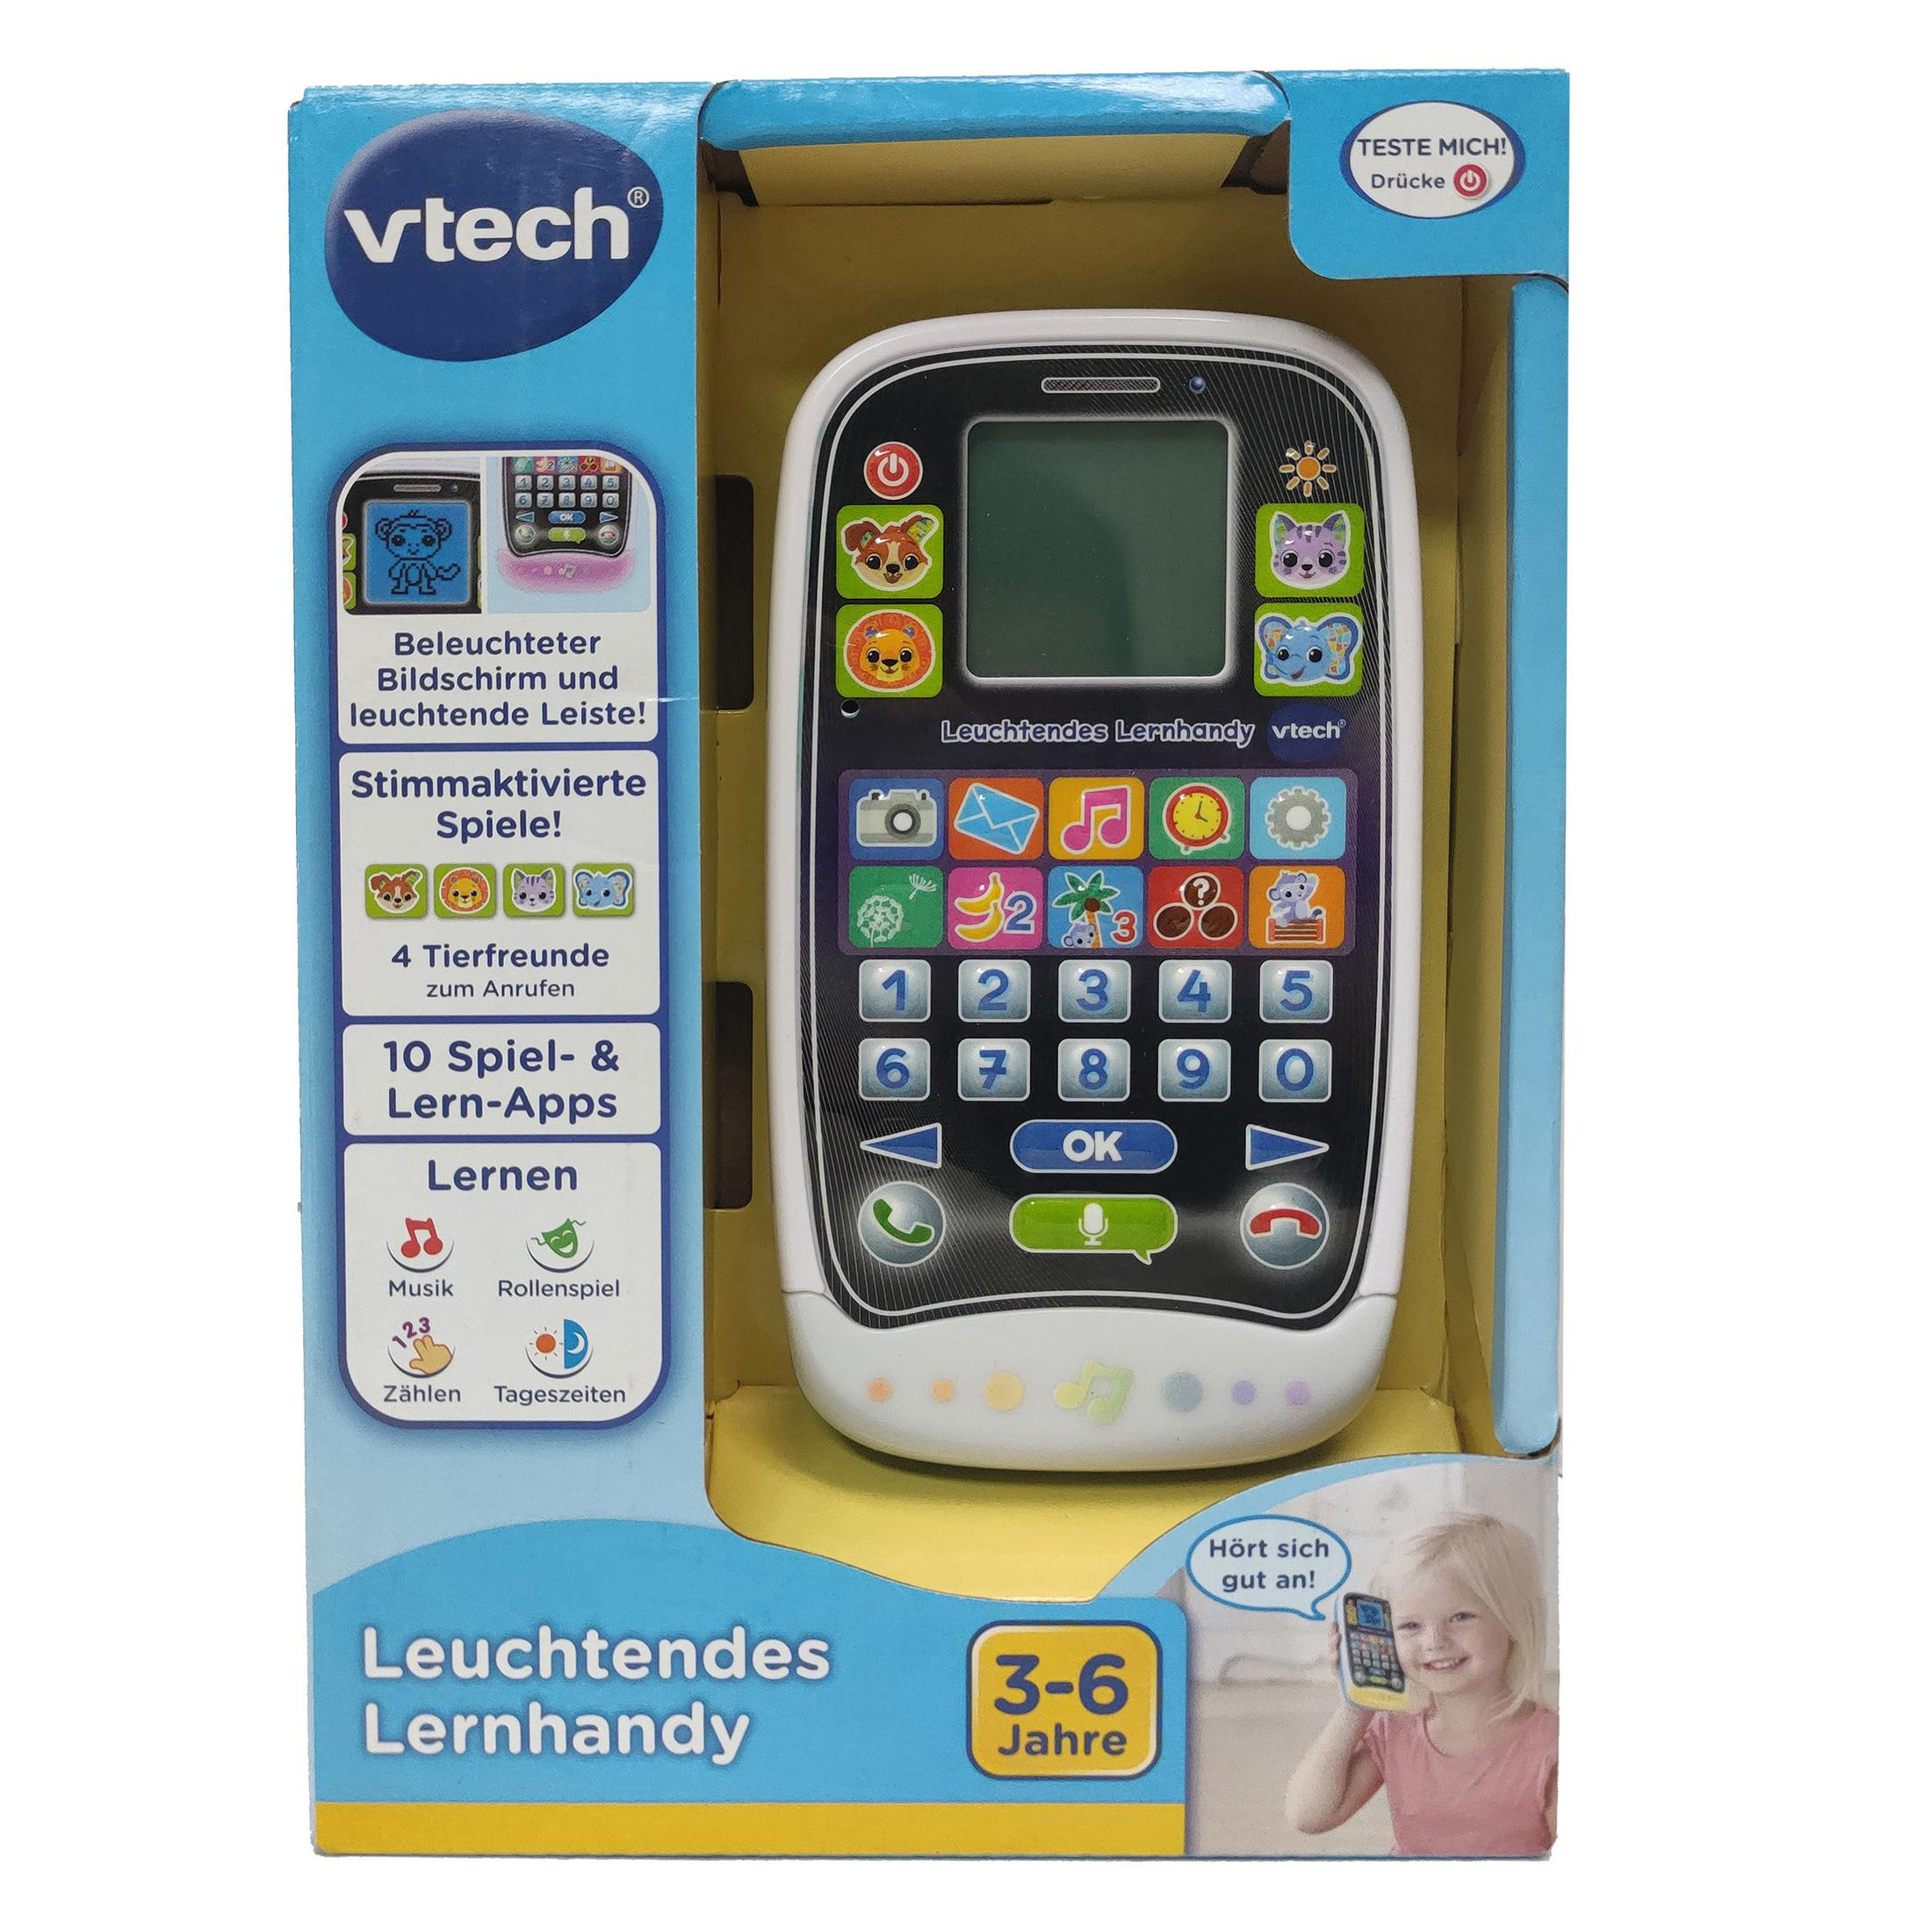 VTECH 80-529204 LEUCHTENDES LERNHANDY Spielzeughandy, Mehrfarbig